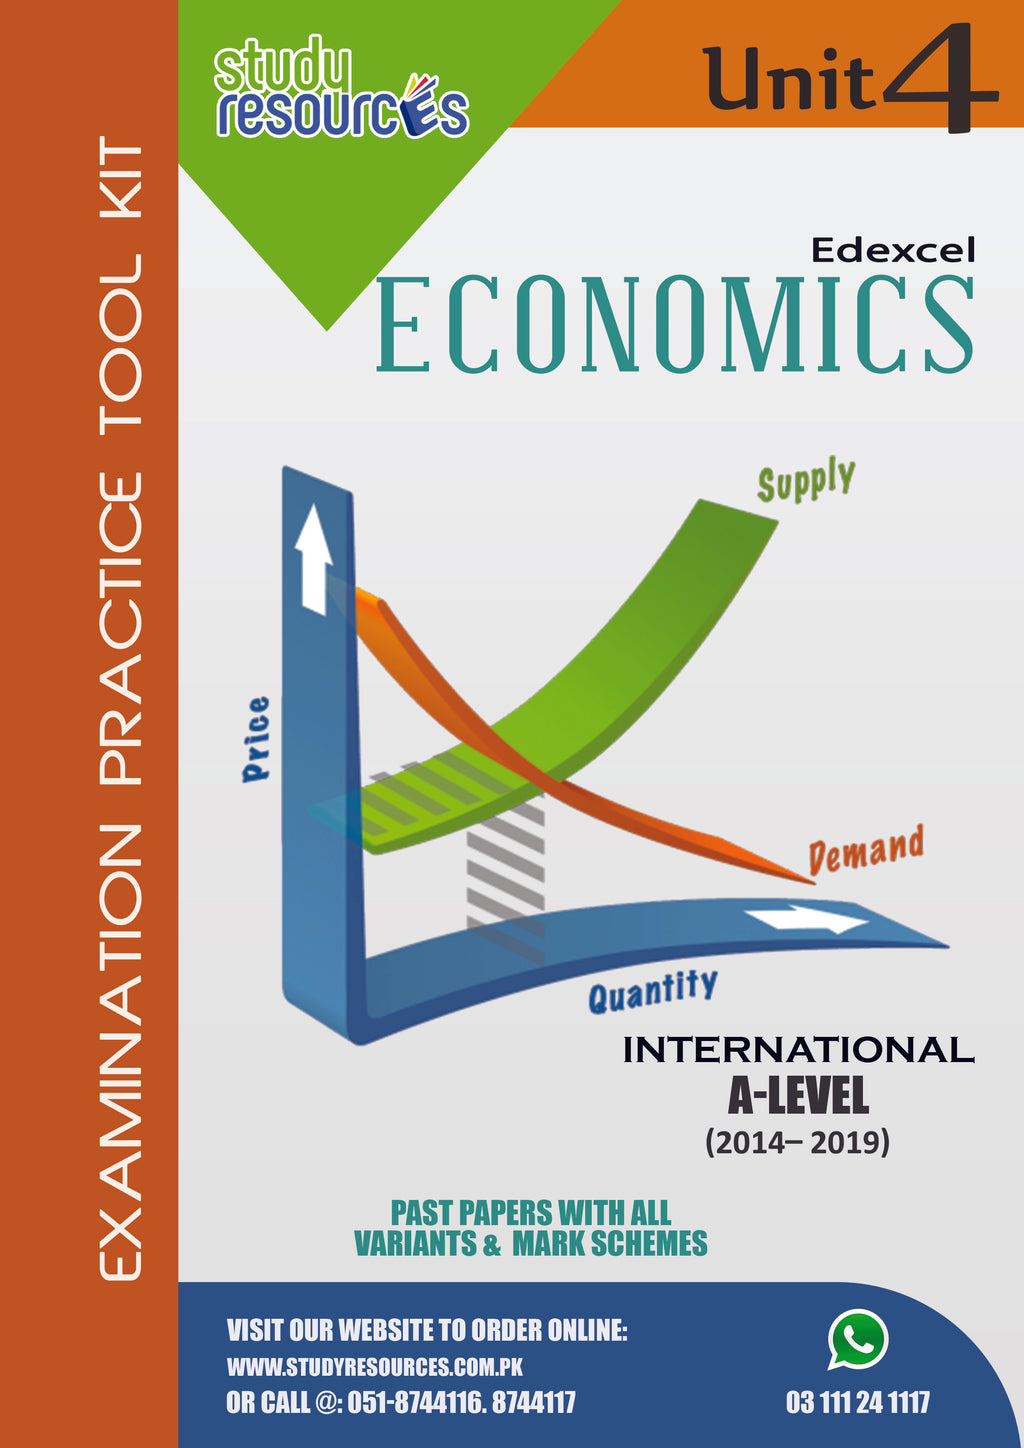 Edexcel A-Level Economics Unit-4 Past Papers (2014-2019)